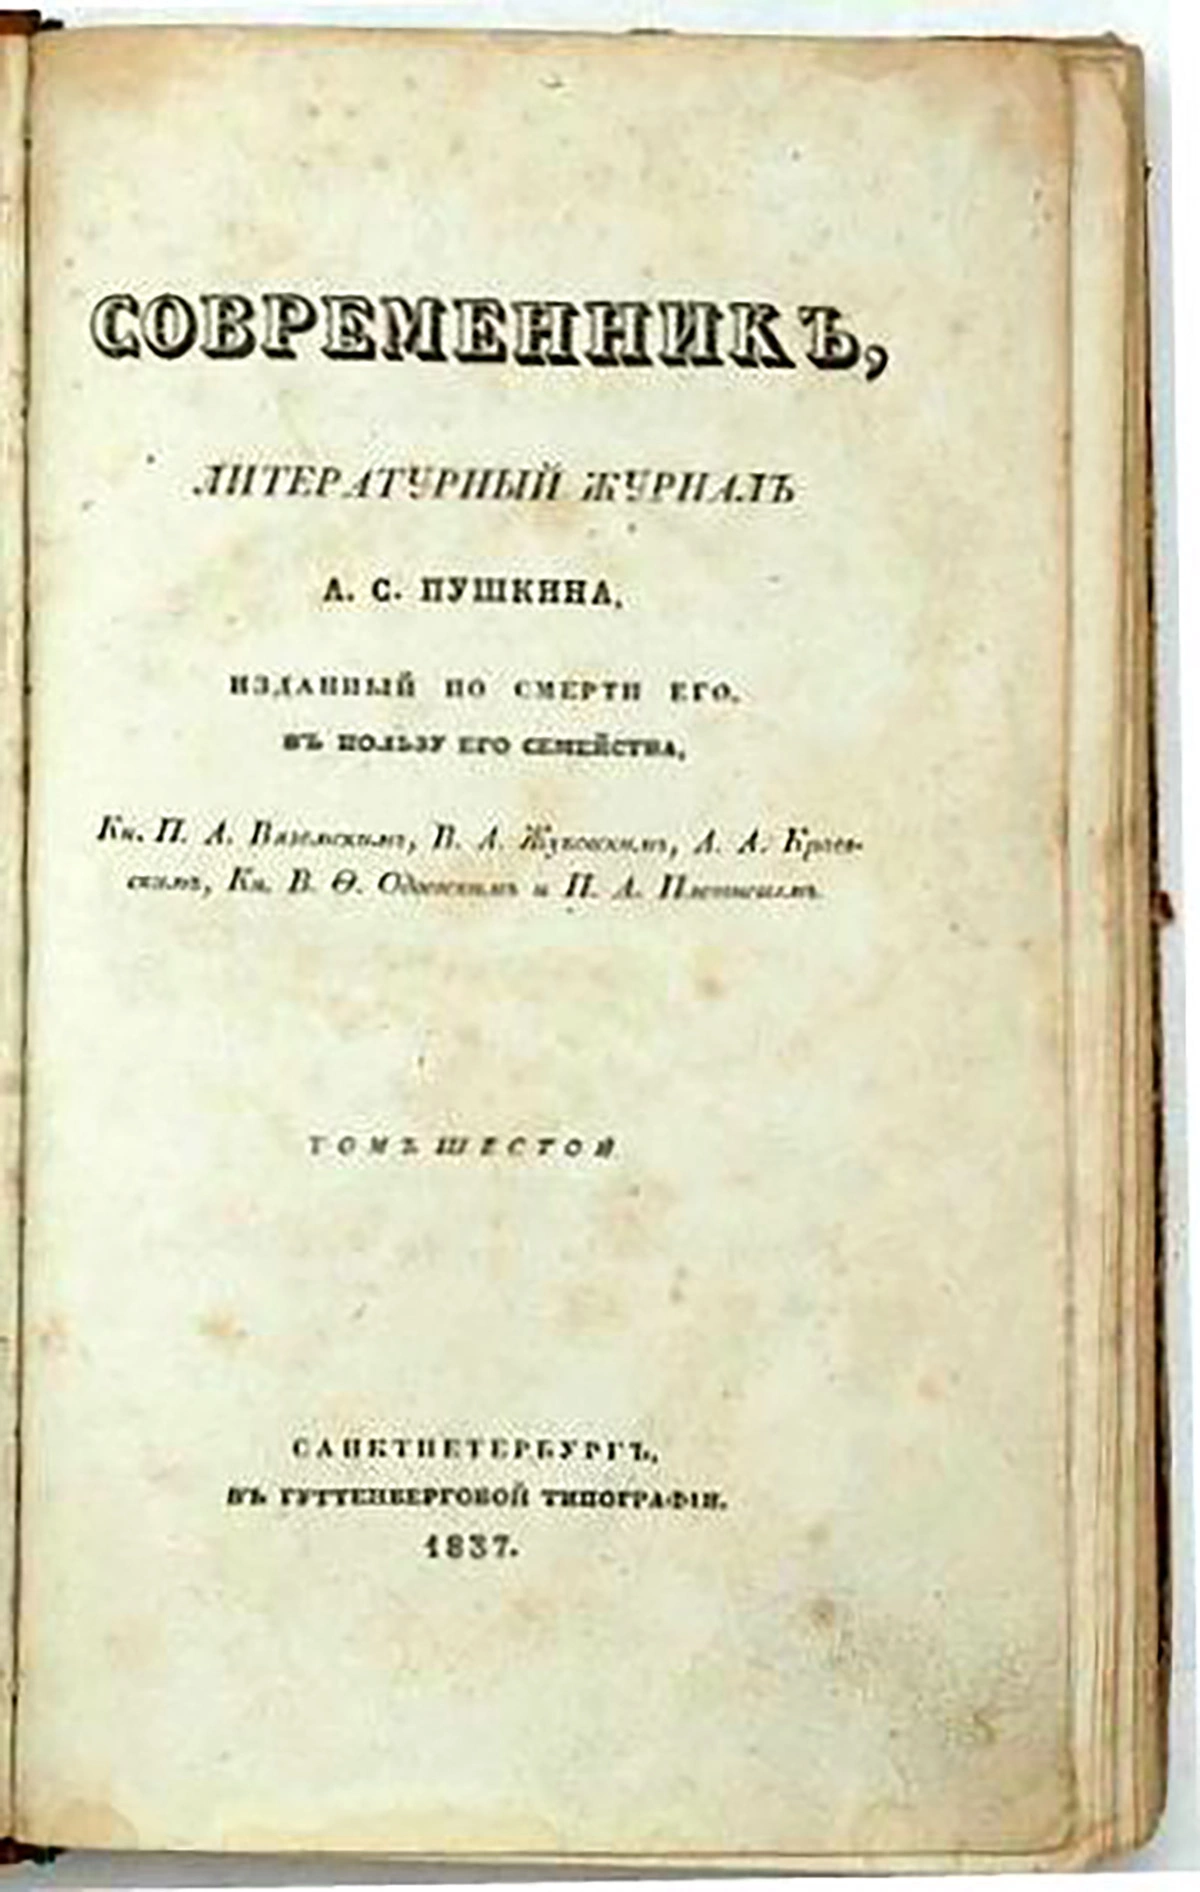 <p>Первый выпуск &laquo;Современника&raquo; после смерти Пушкина в пользу его семьи.&nbsp;1837 год</p>

<p></p>